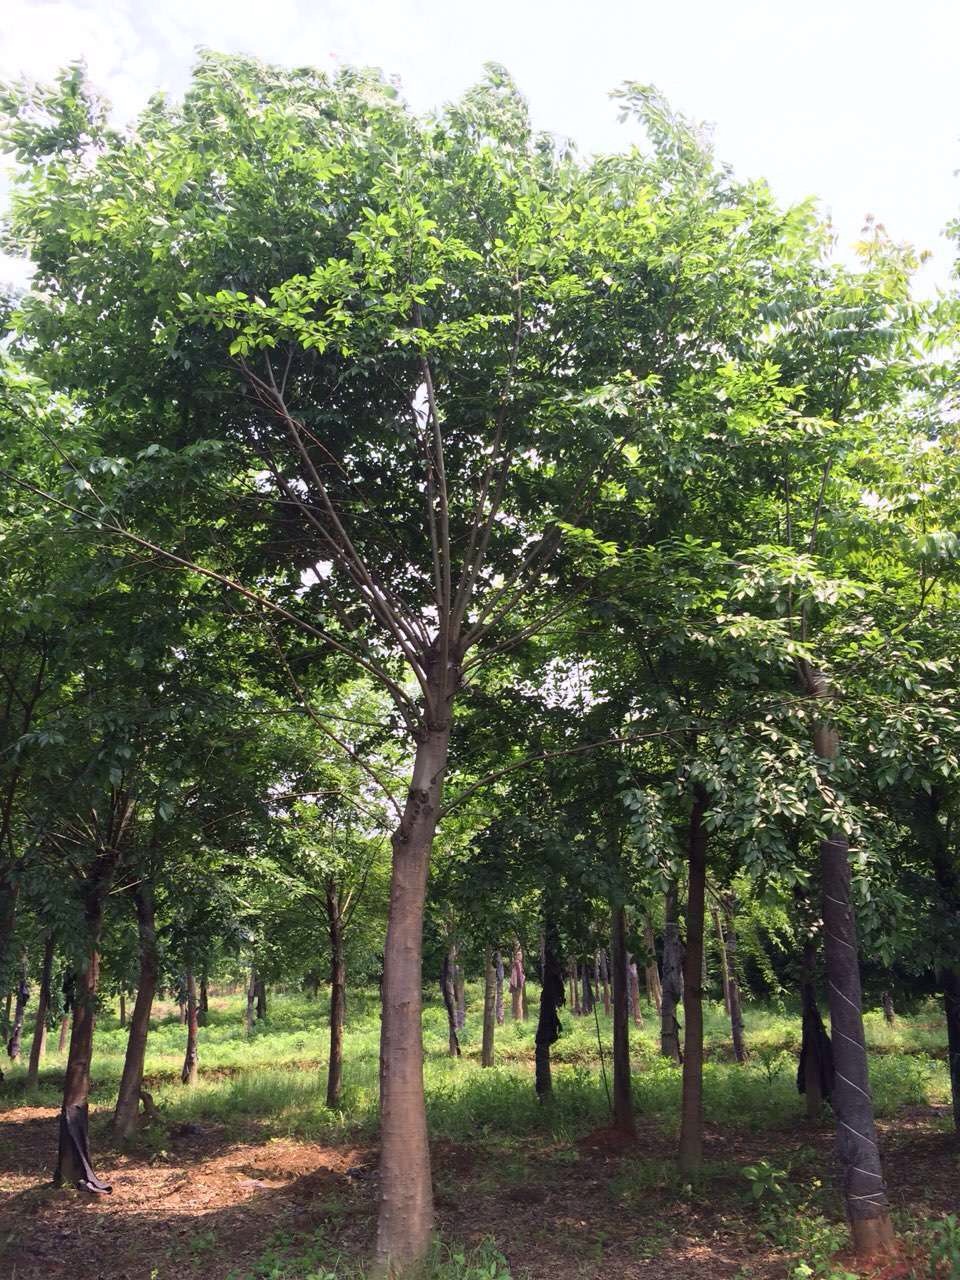 西安市朴树厂家朴树种植基地朴树种植基地  朴树 朴树批发 朴树大量出售 西安朴树